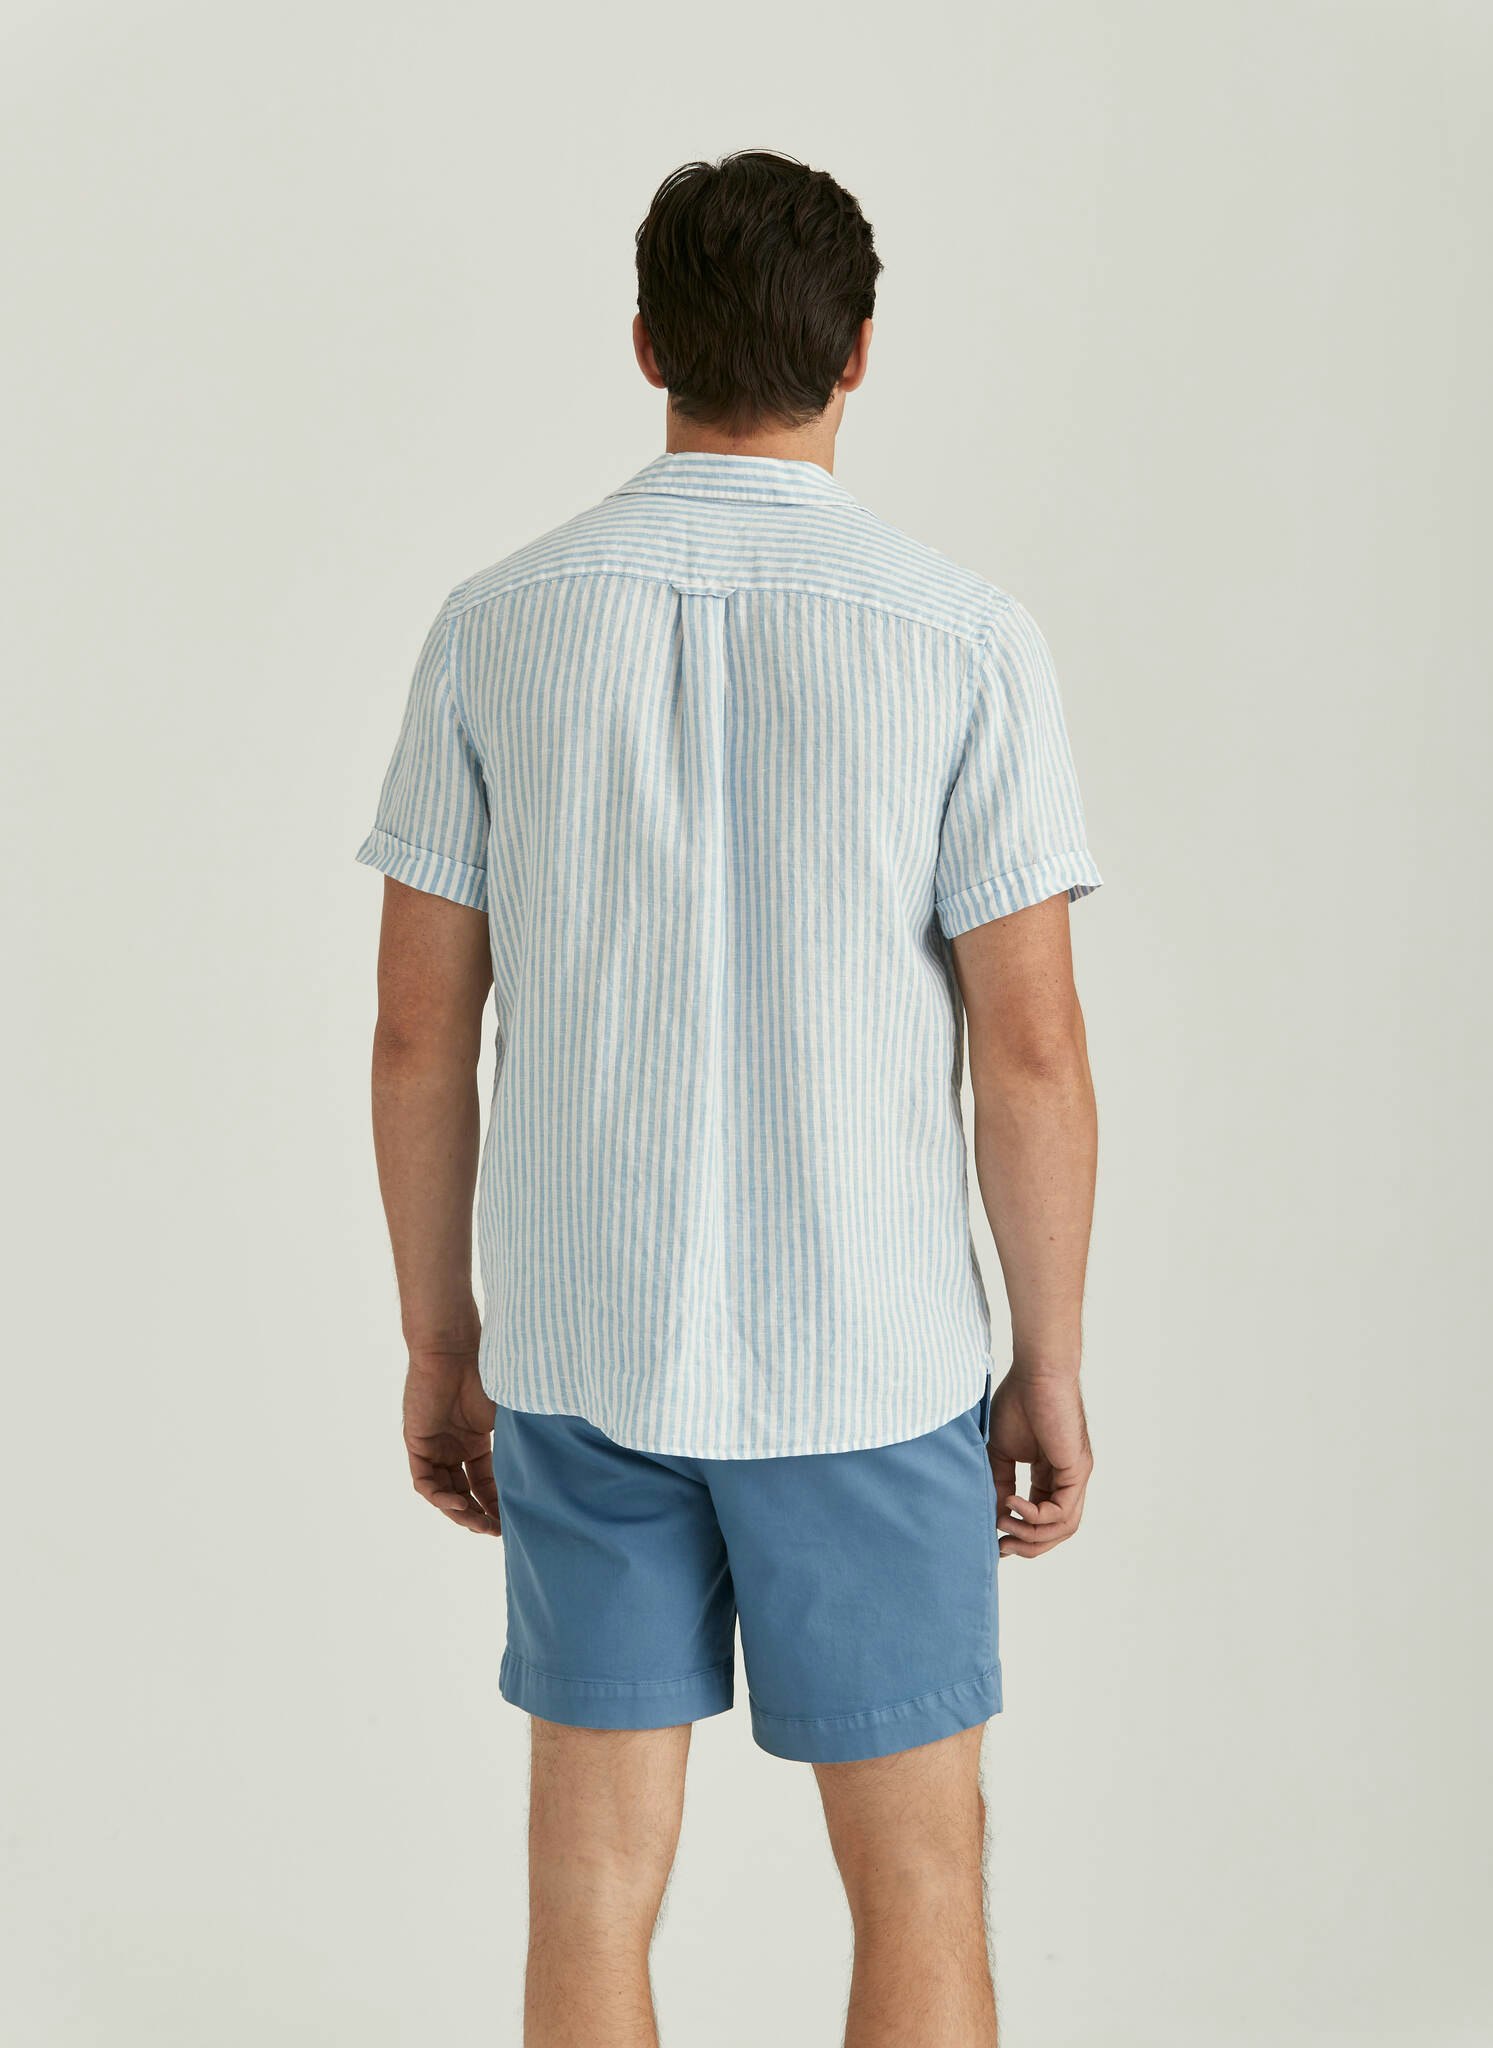 Morris - Short Sleeve Linen Shirt, Blue